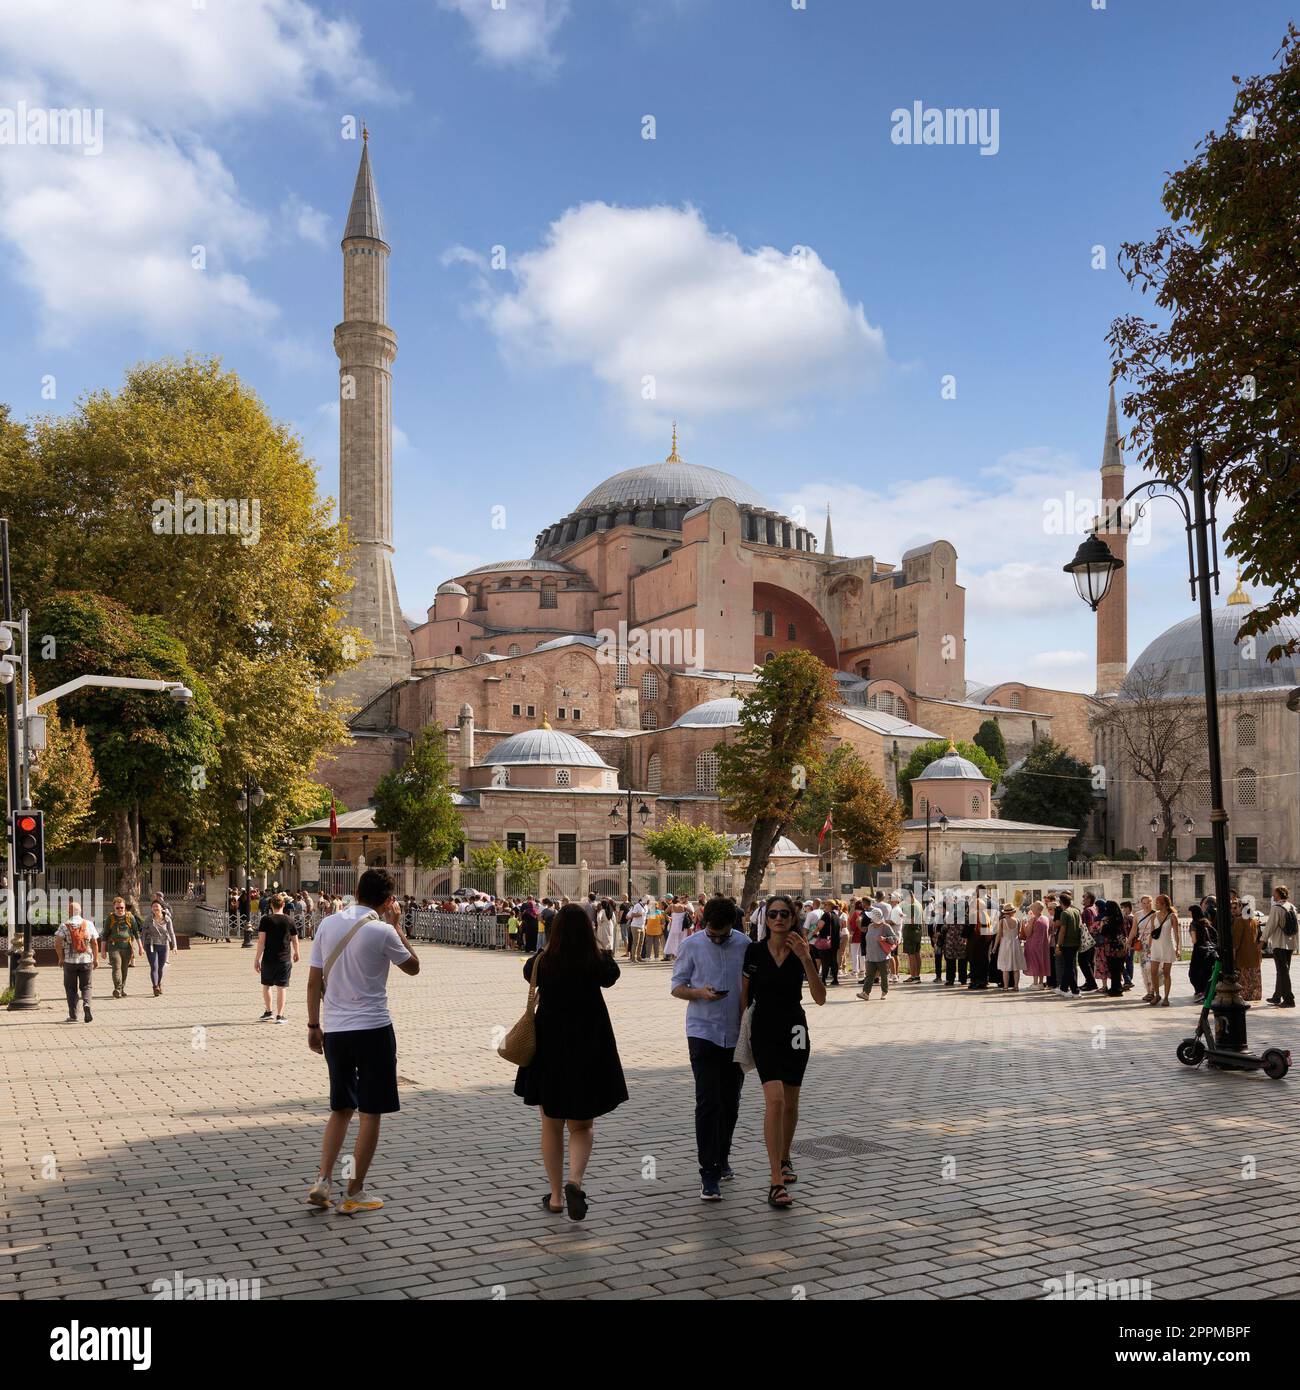 Lunga coda di turisti in attesa di entrare nella Moschea di Santa Sofia, o Ayasofya Camii, ex chiesa greco-ortodossa Foto Stock